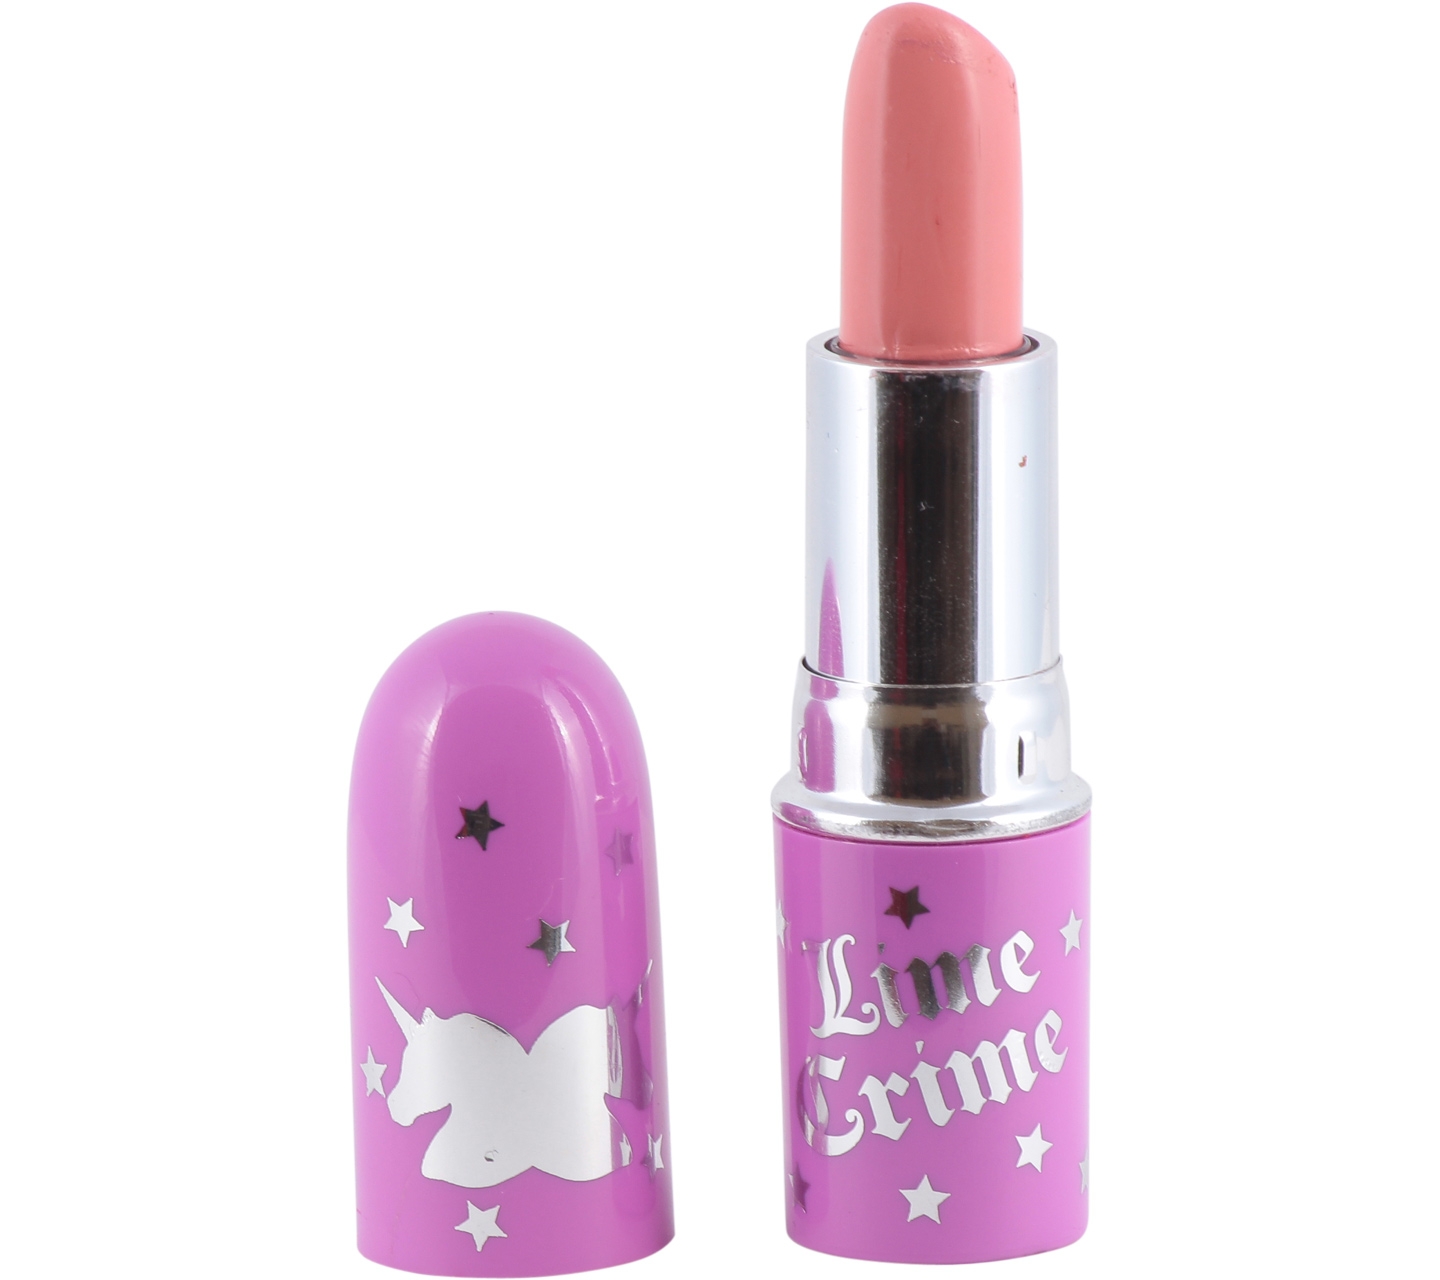 Lime Crime Babette Vegan Lipstick Lips